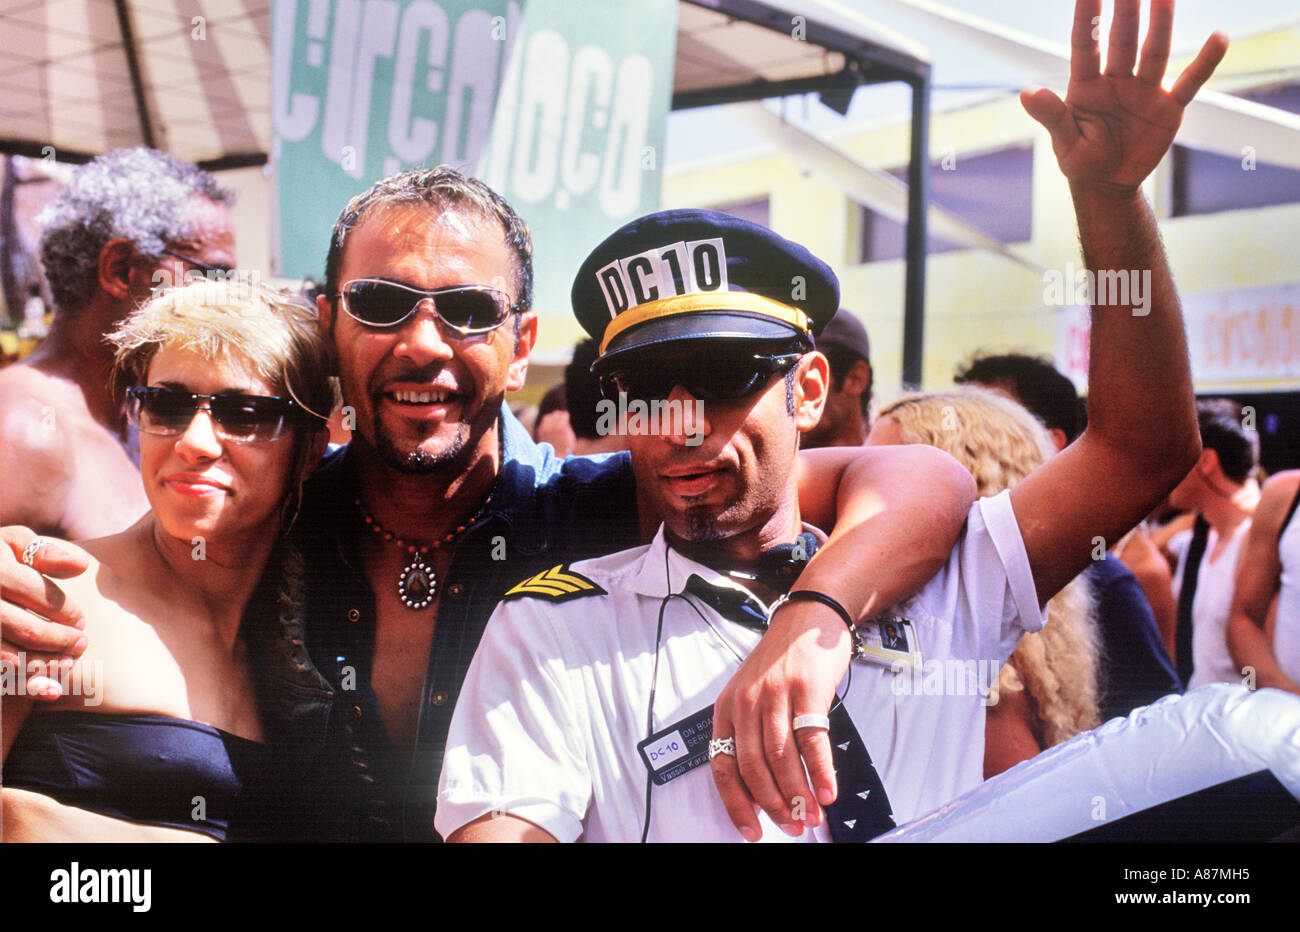 Group of people at Circo Loco at DC10 Ibiza Stock Photo